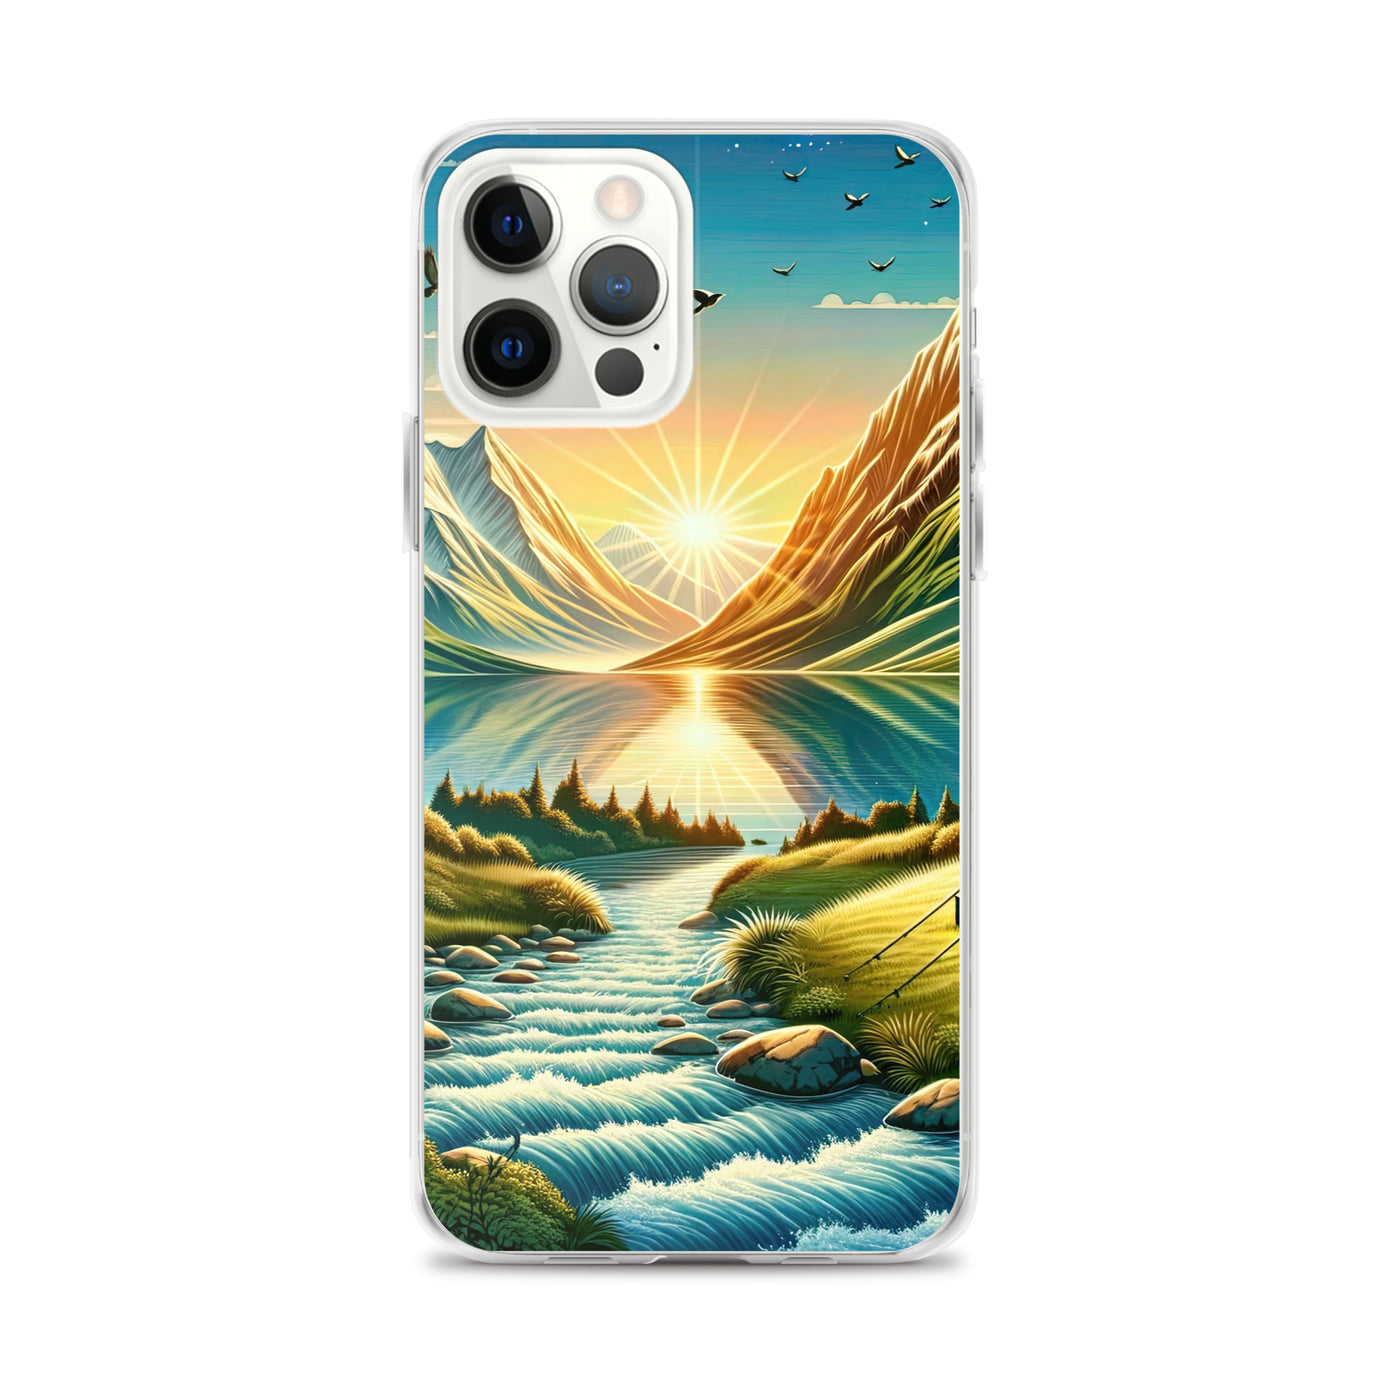 Zelt im Alpenmorgen mit goldenem Licht, Schneebergen und unberührten Seen - iPhone Schutzhülle (durchsichtig) berge xxx yyy zzz iPhone 12 Pro Max